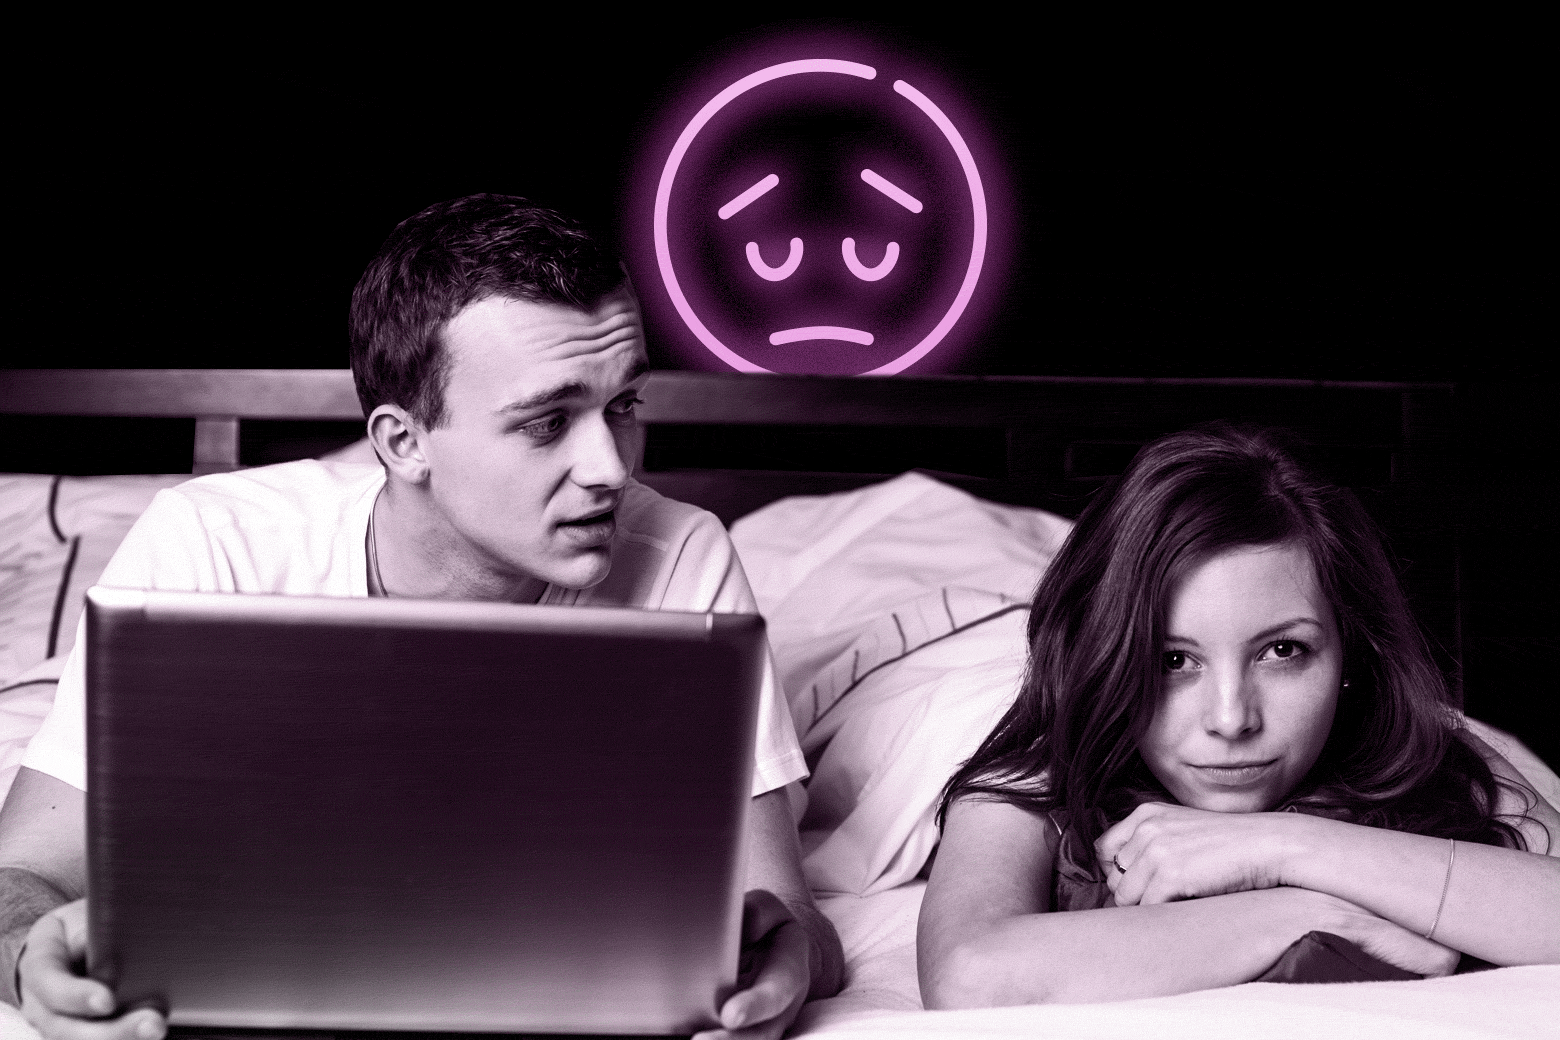 Seorang pria membaca dari laptop di tempat tidur dengan seorang wanita di sampingnya tampak sedih. Emoji wajah sedih pada neon melayang di atas mereka.